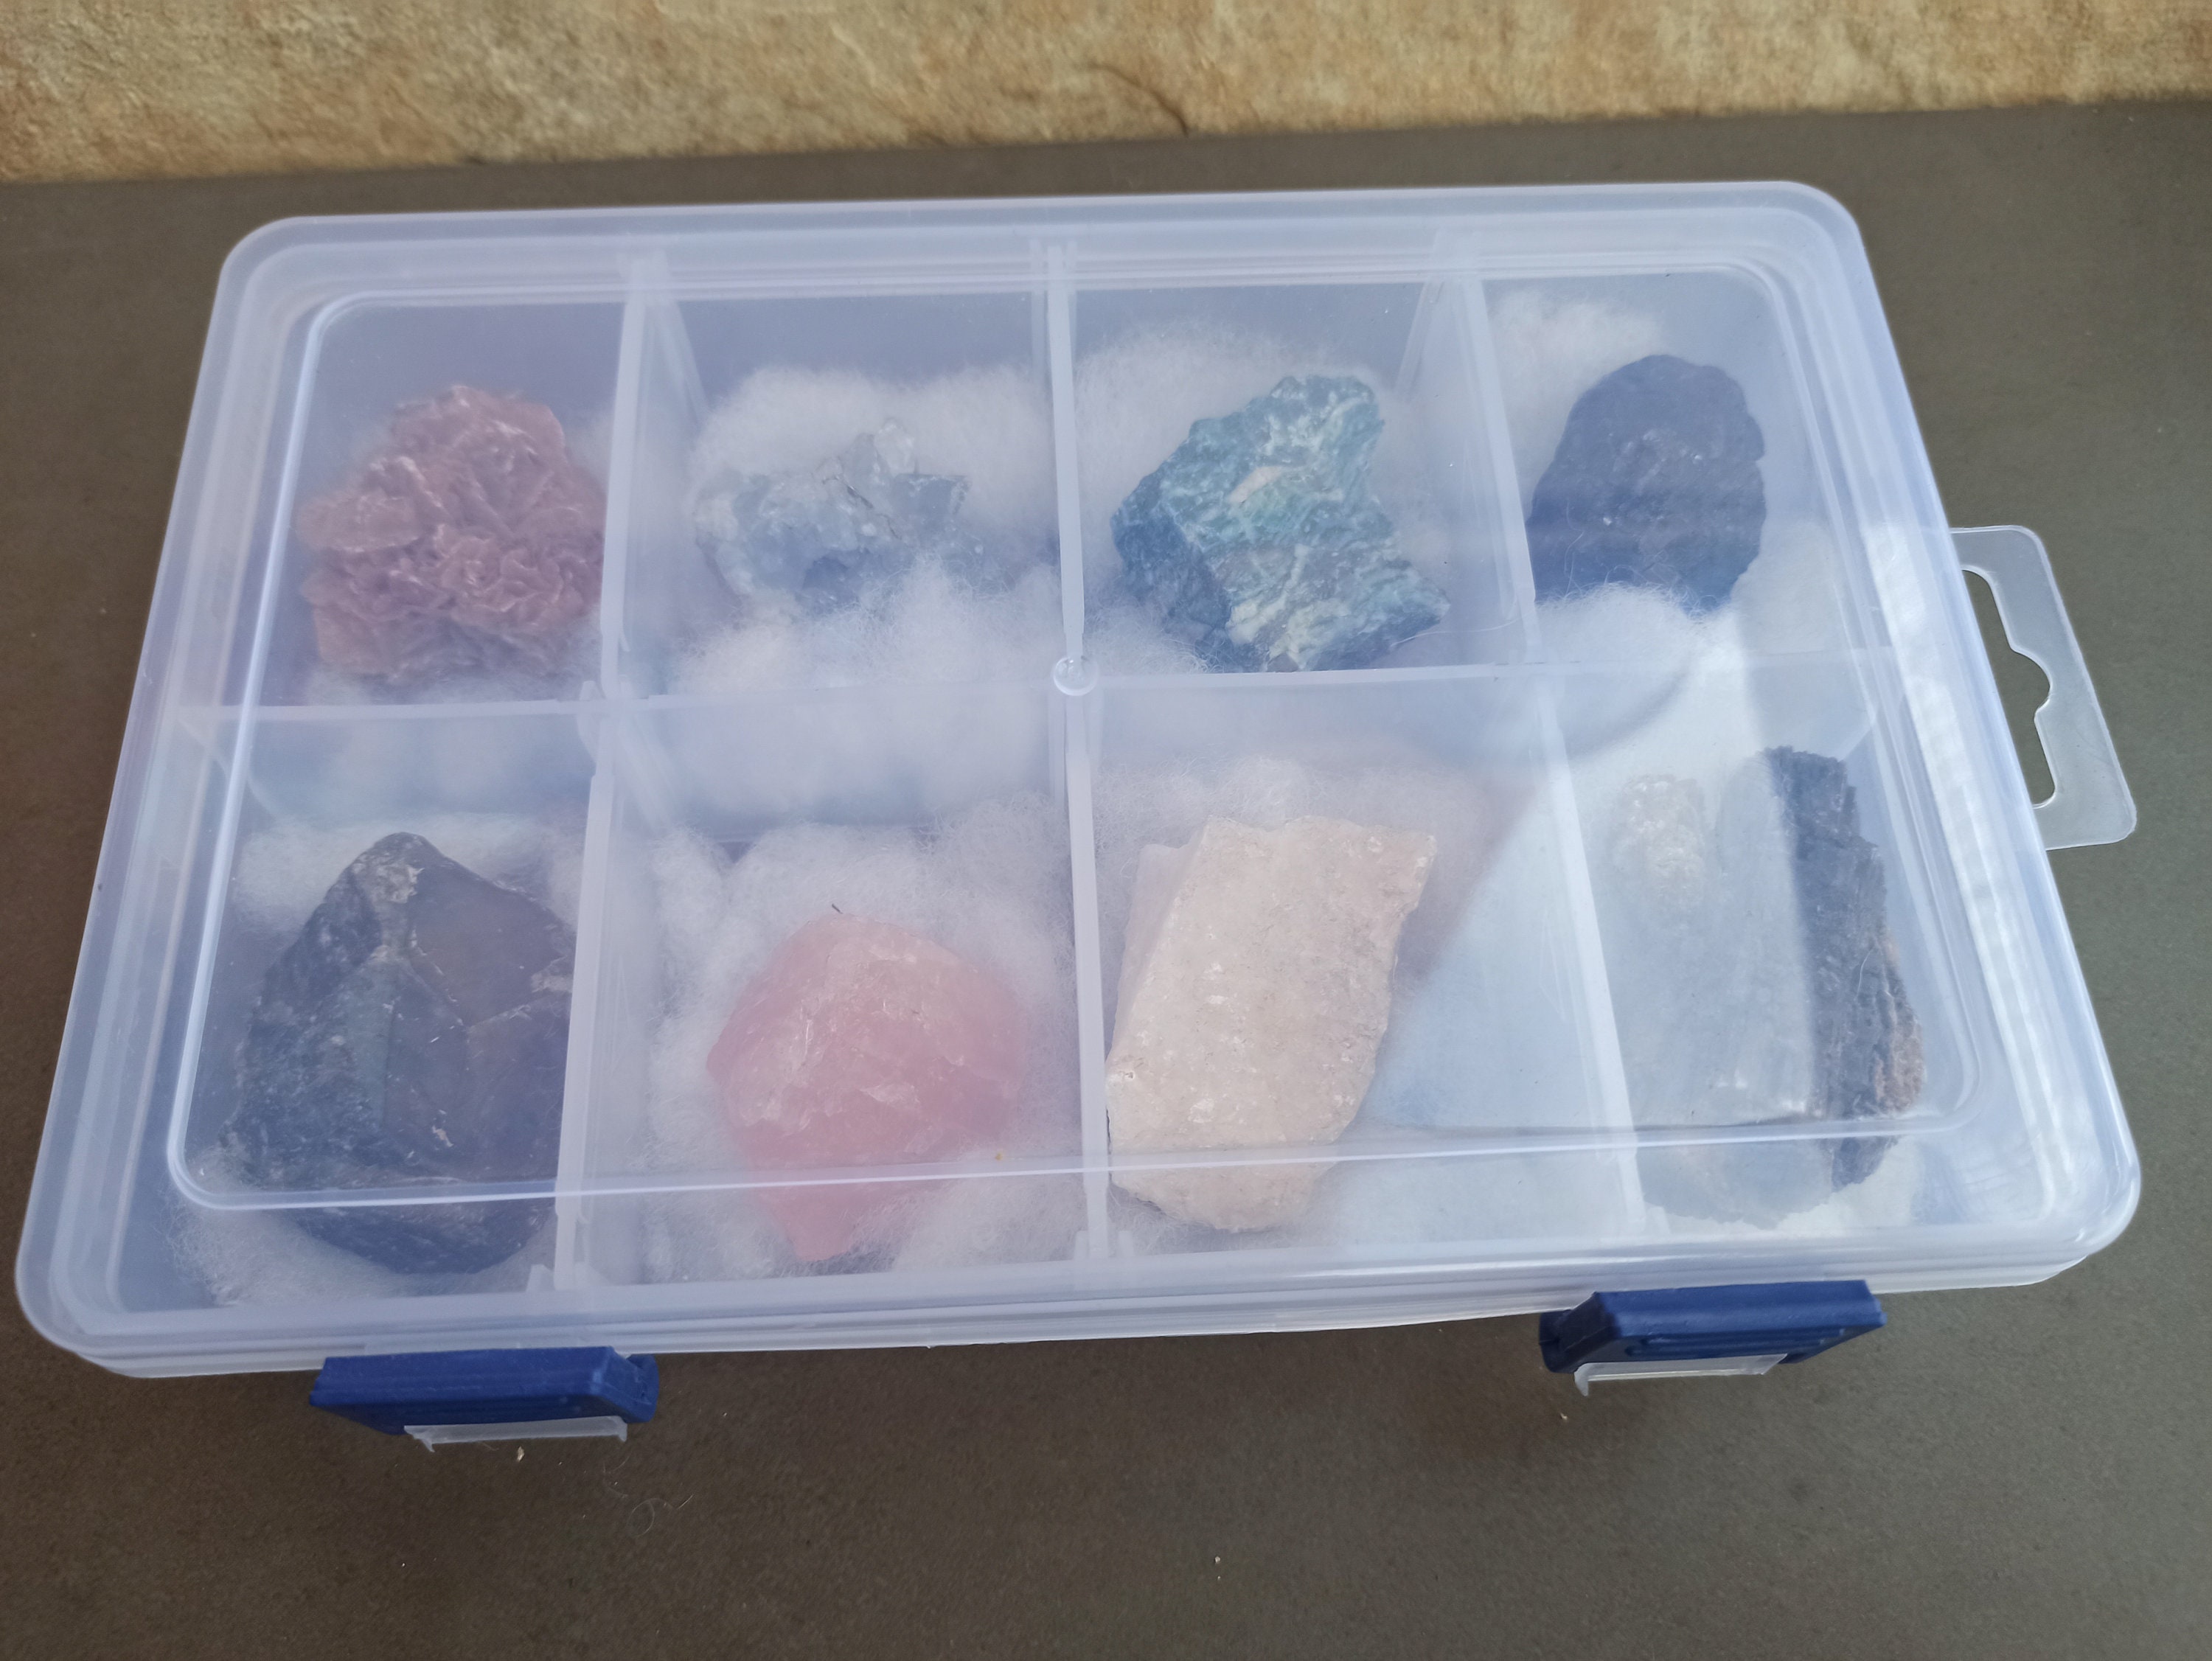 Crée des cristaux et des pierres précieuses - N/A - Kiabi - 17.58€